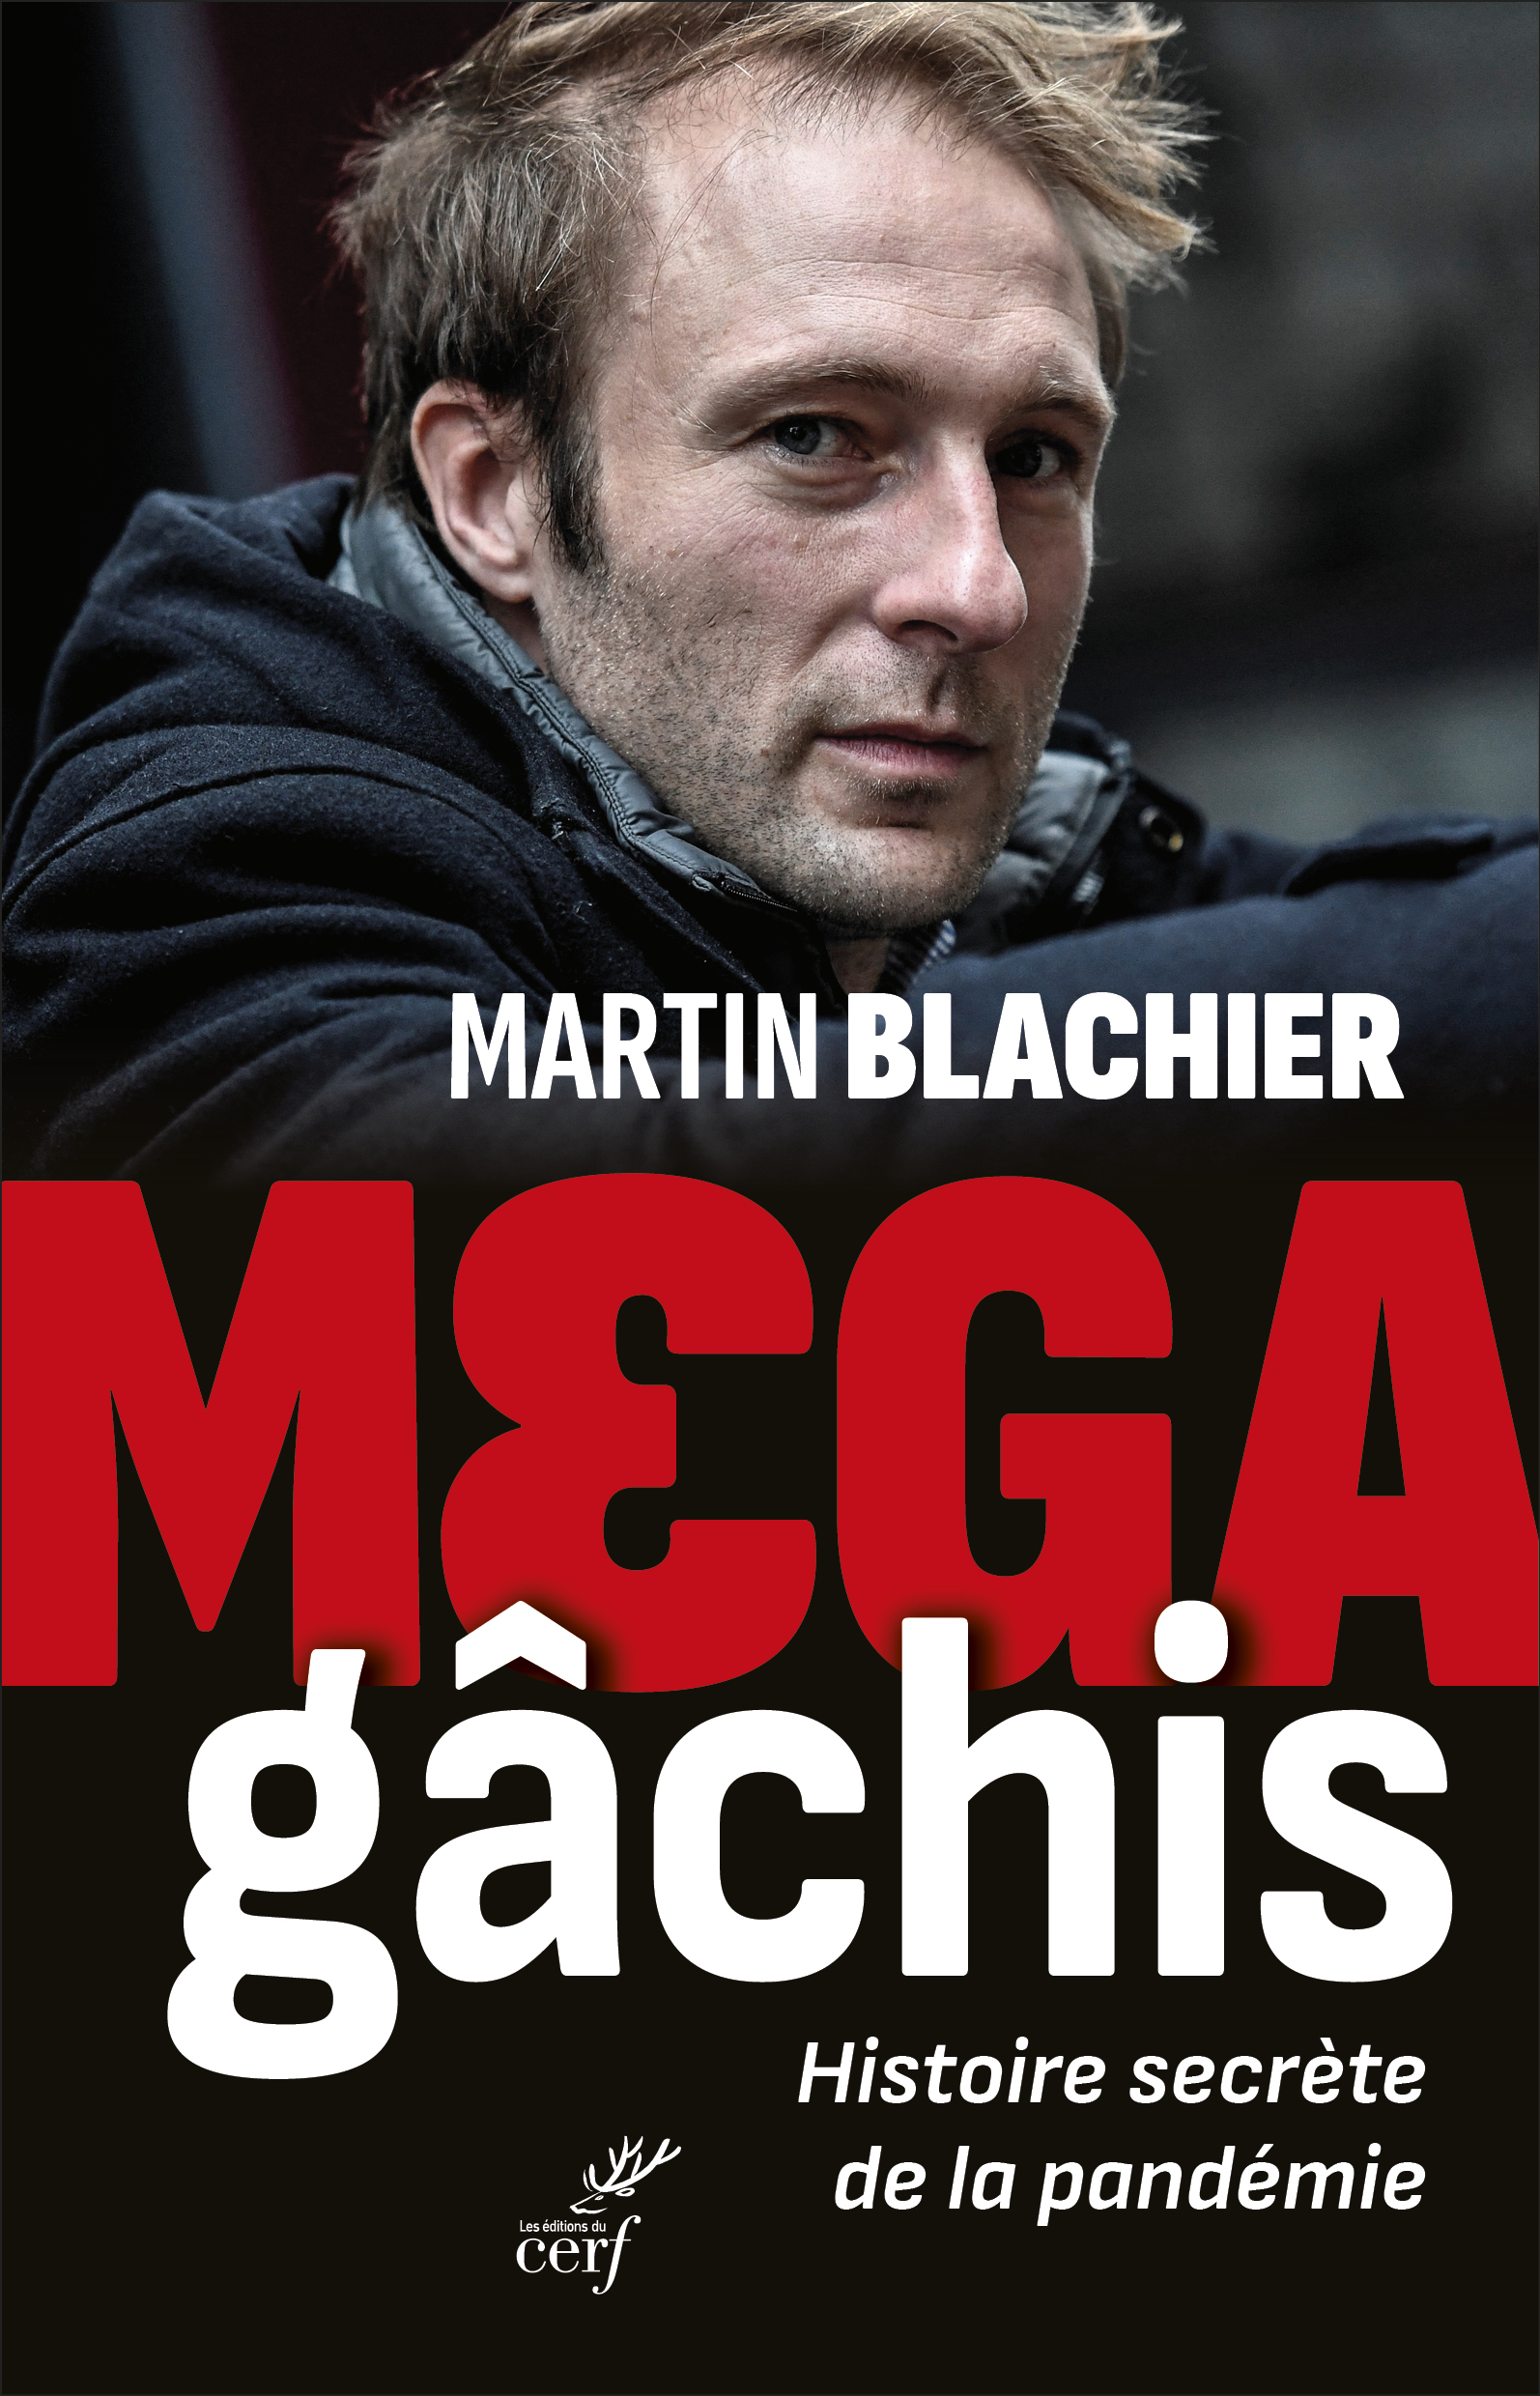 Mega gâchis, Histoire secrète de la pandémie de Martin Blachier paraît aux éditions du Cerf.